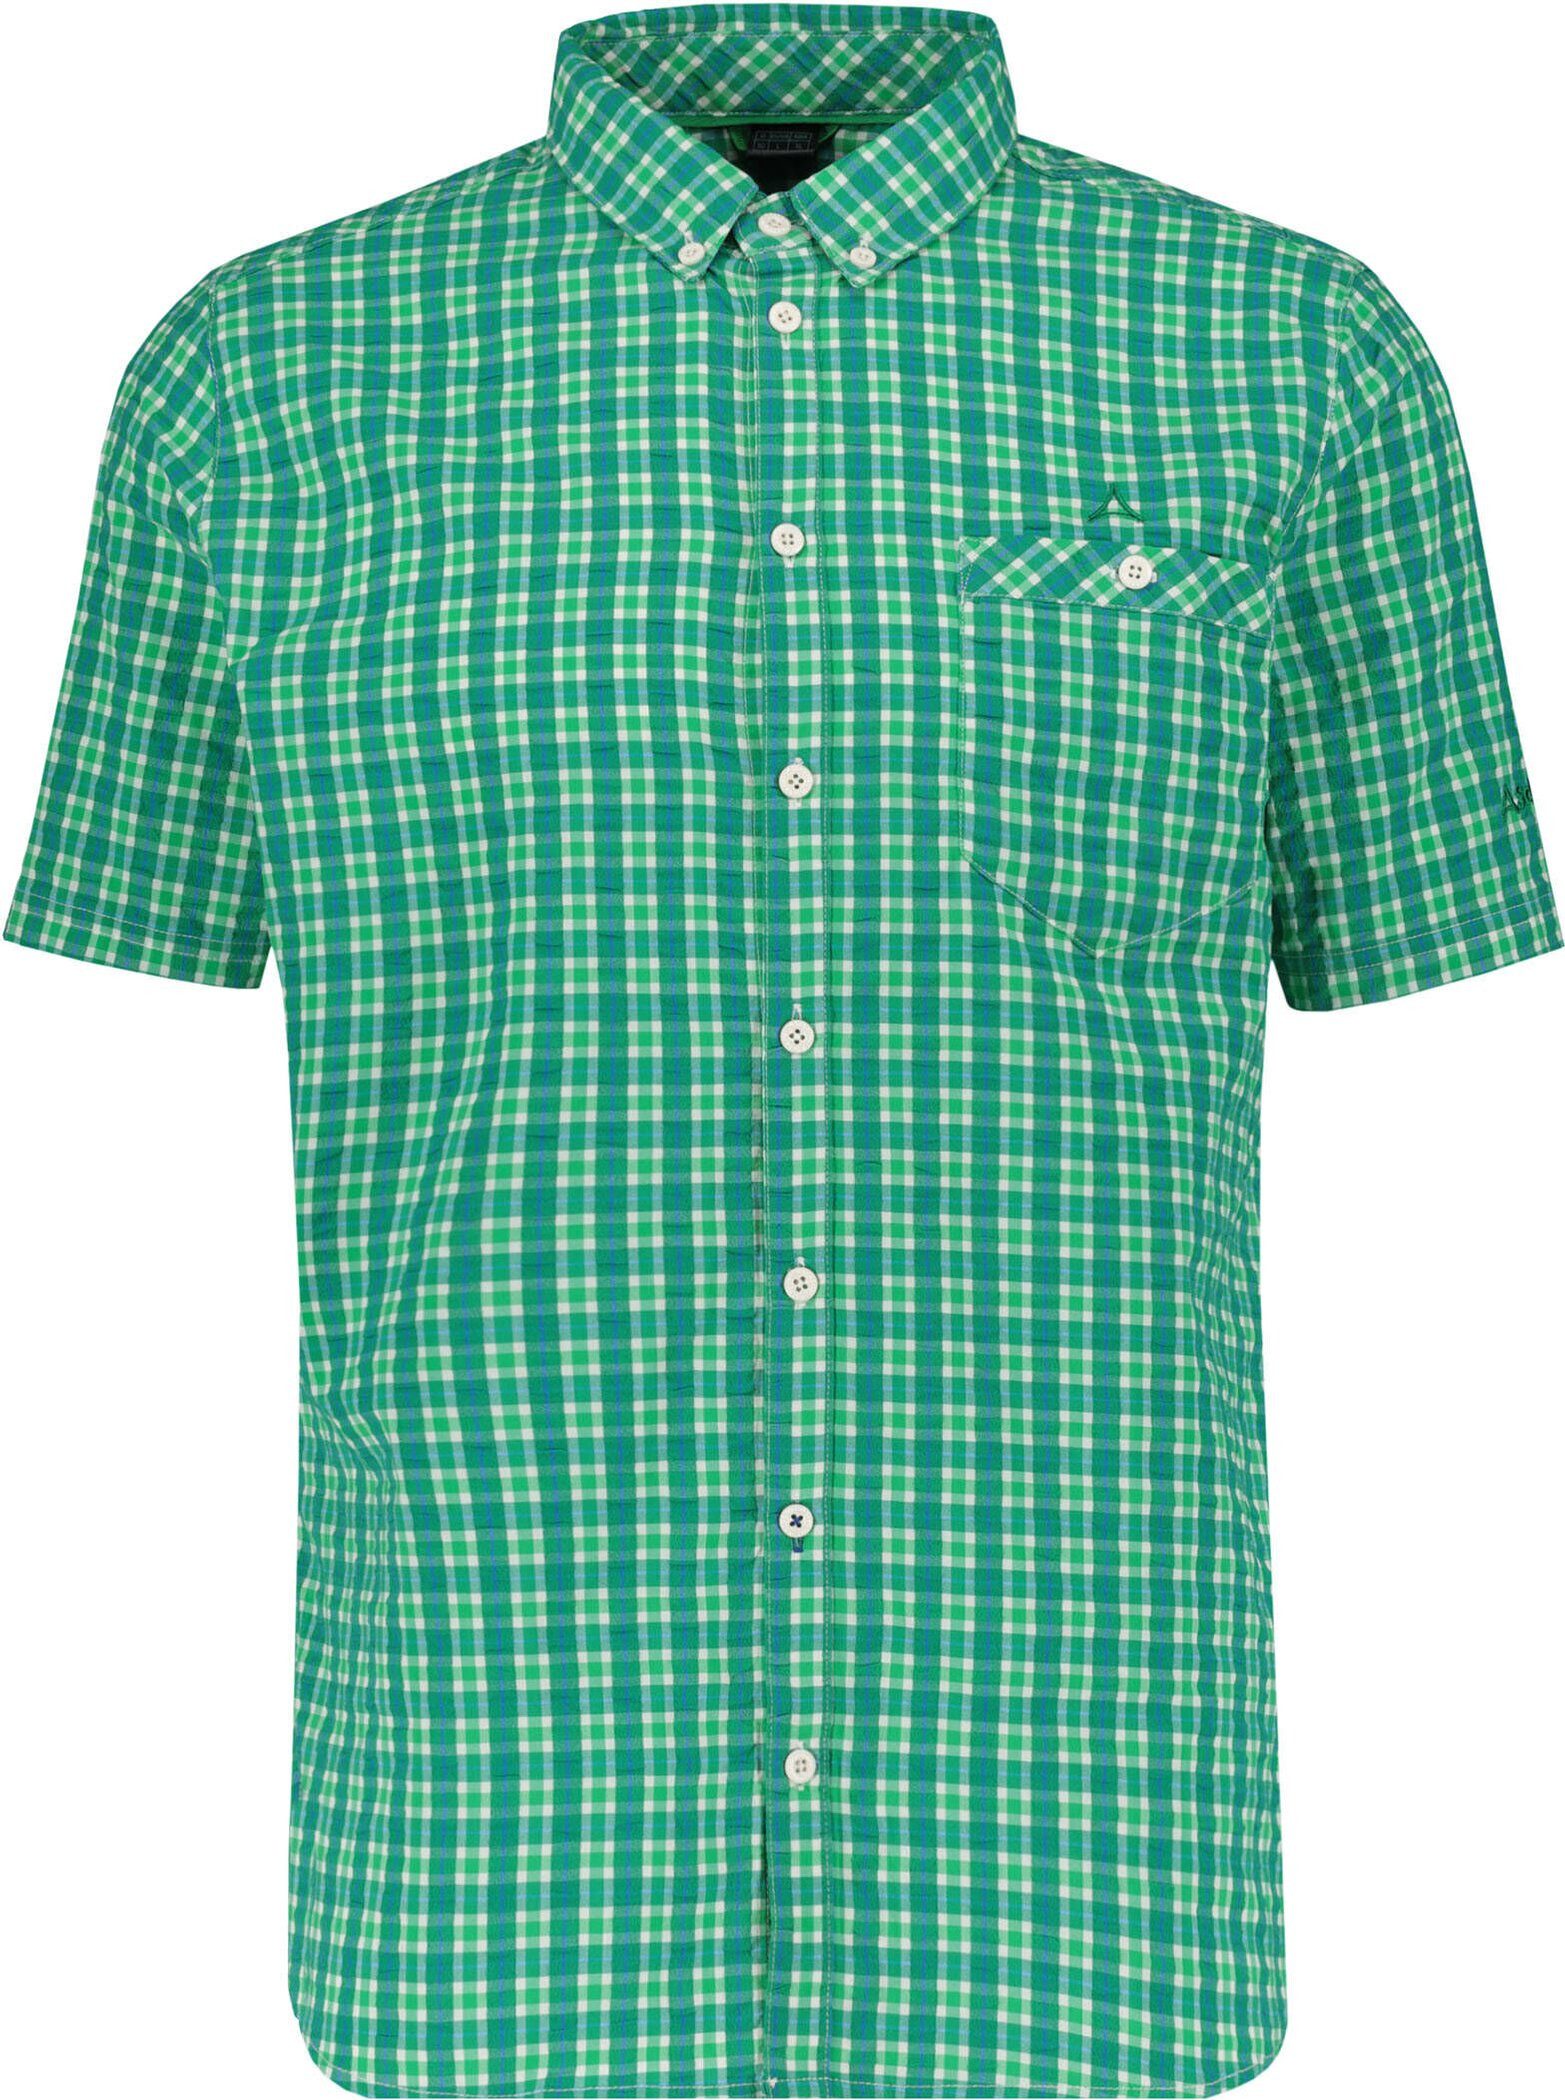 Schöffel Funktionshemd Shirt Kuopio3 bright green